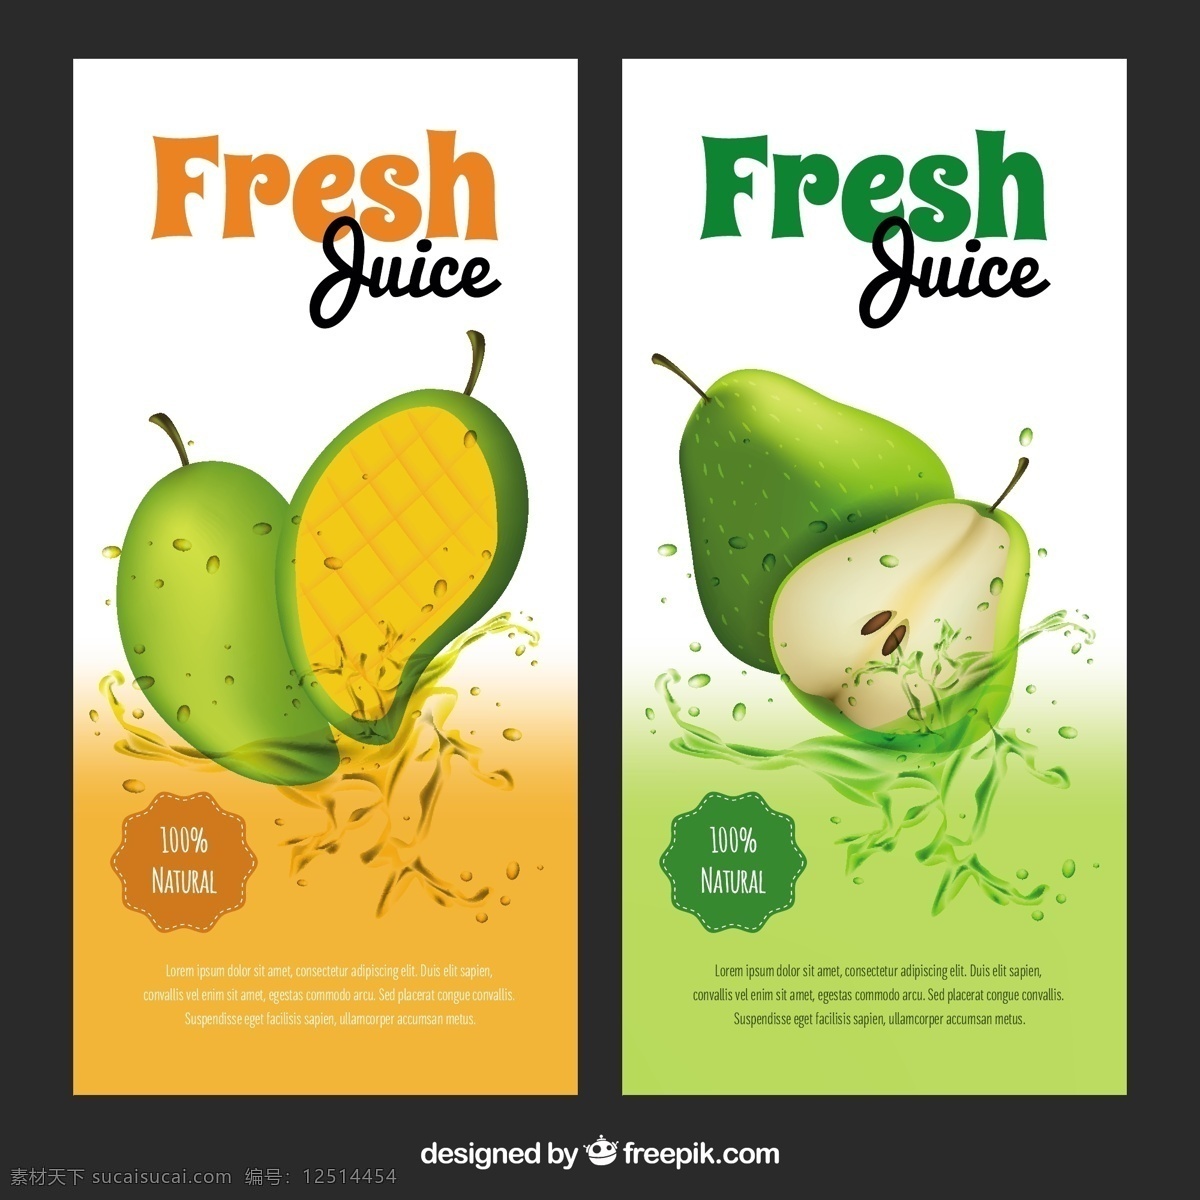 现实 芒果 梨汁 伟大 旗帜 食品 夏季 横幅 水果 颜色 热带 饮料 果汁 自然 健康 色斑 饮食 健康食品 营养